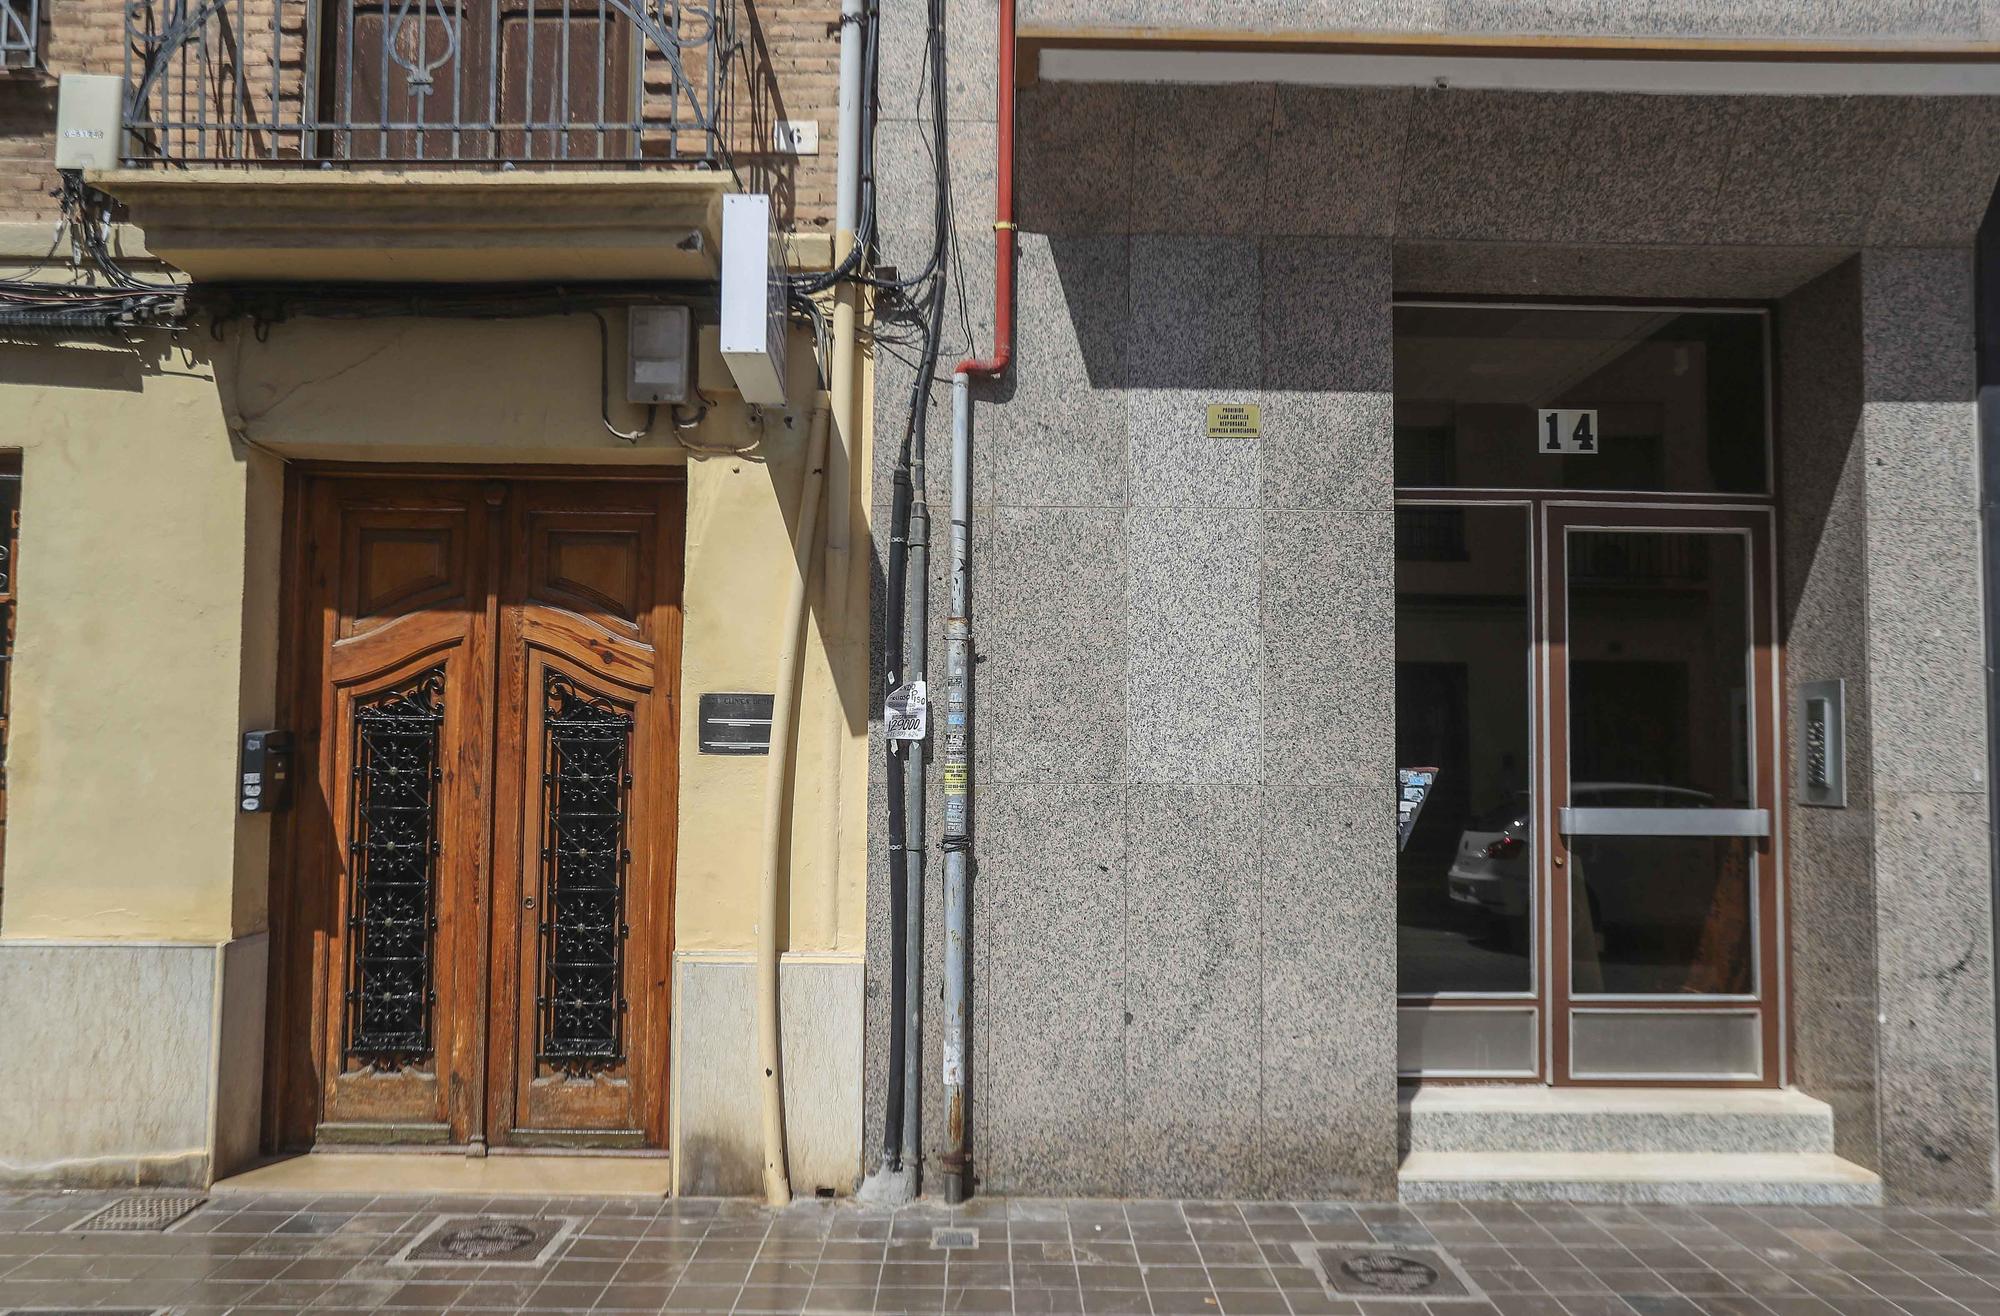 Descubre los contrastes de València